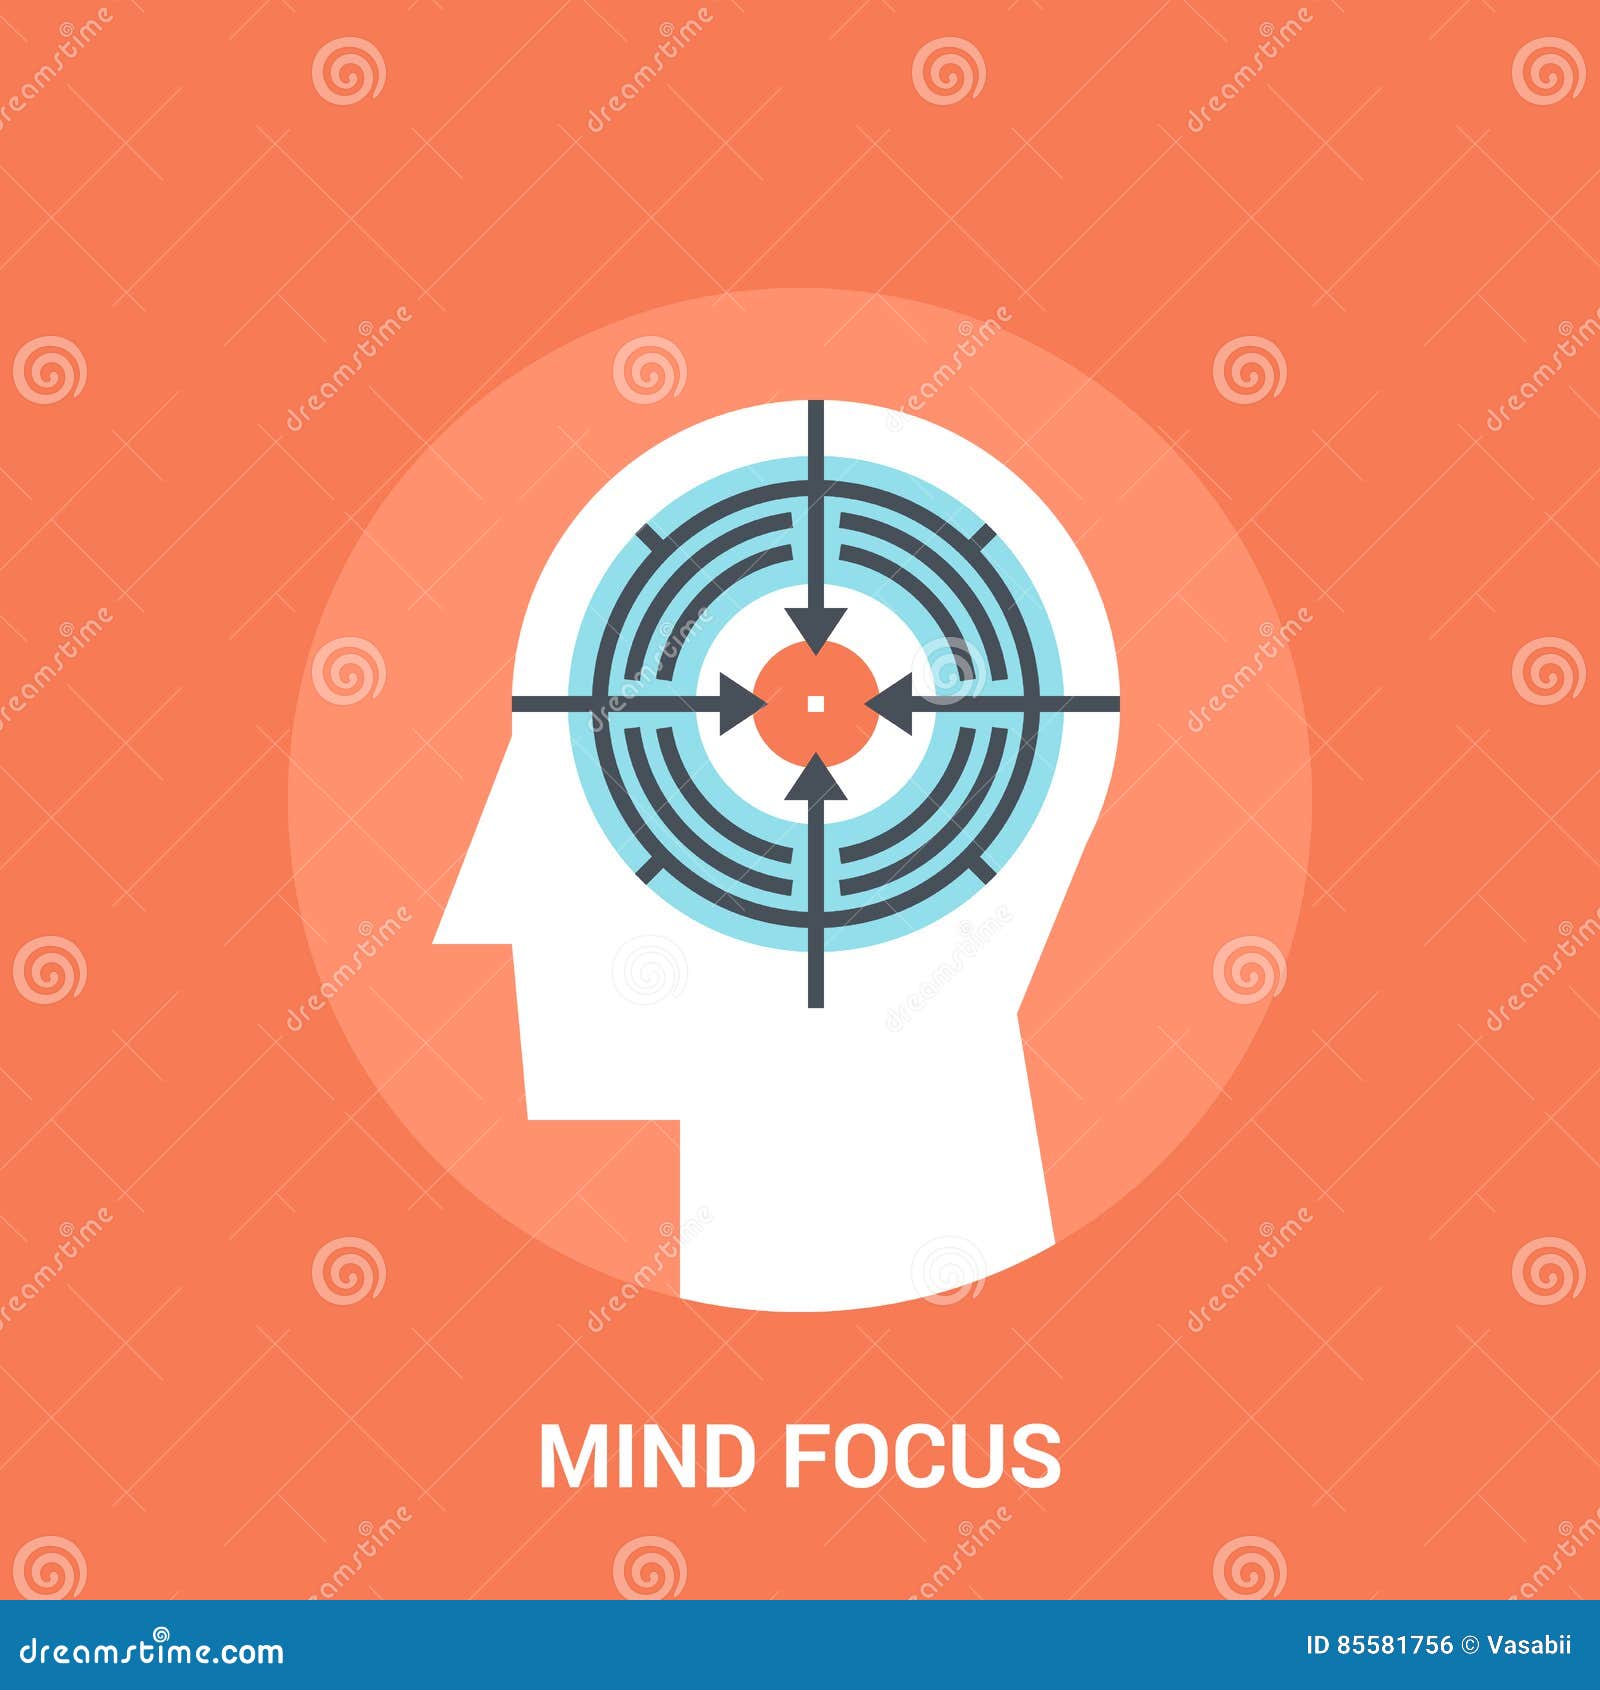 mind focus icon concept